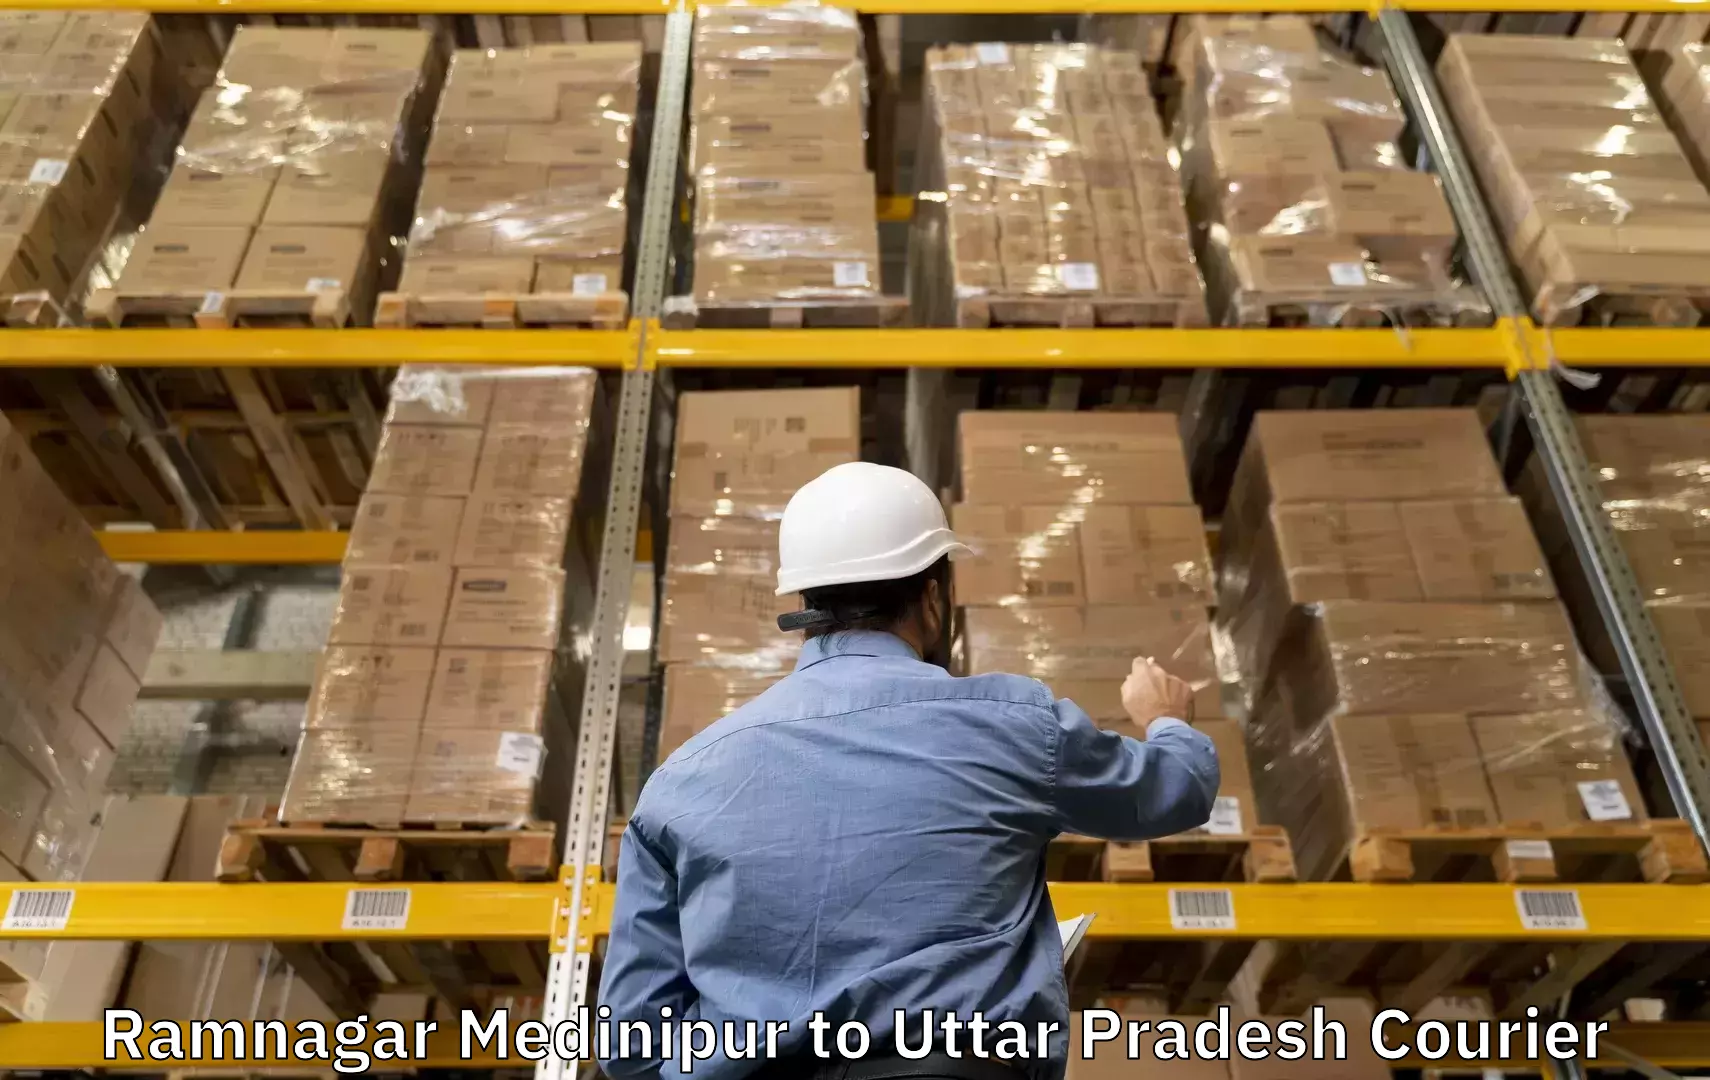 Luggage delivery operations Ramnagar Medinipur to Fazilnagar